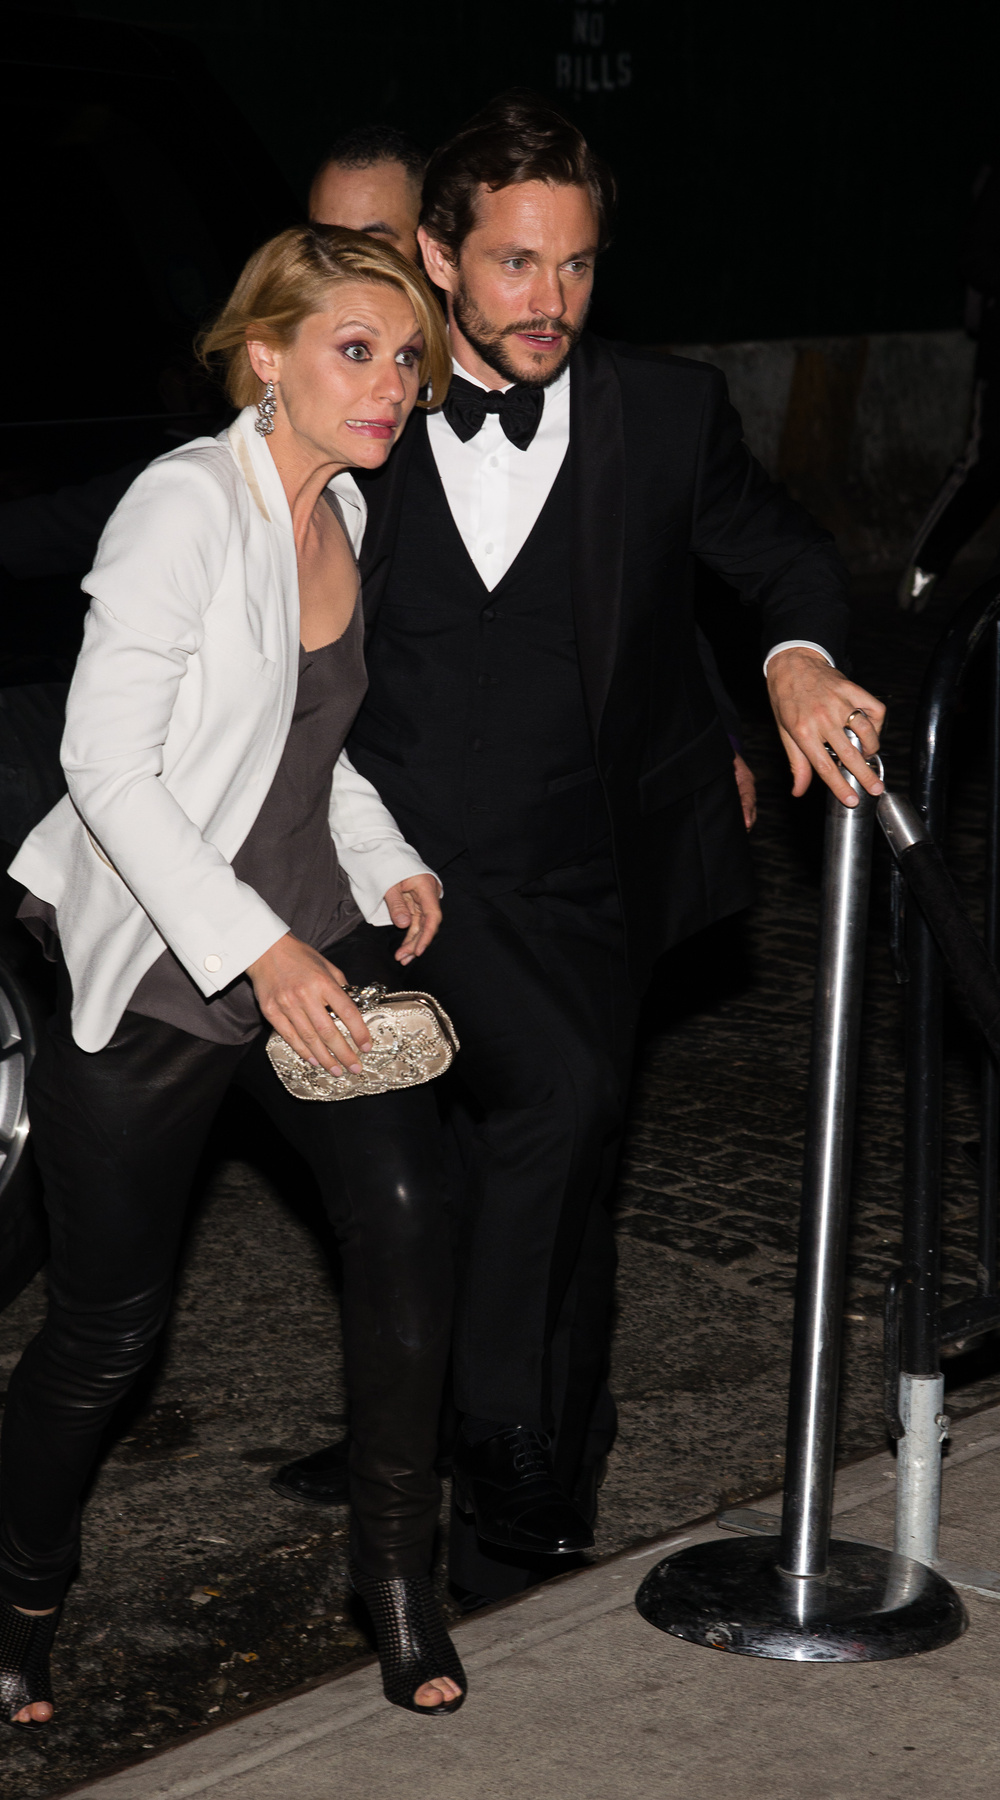 Hugh Dancy (színész, például a Hannibal című sorozatban) és neje, Claire Danes mintha elkéstek volna